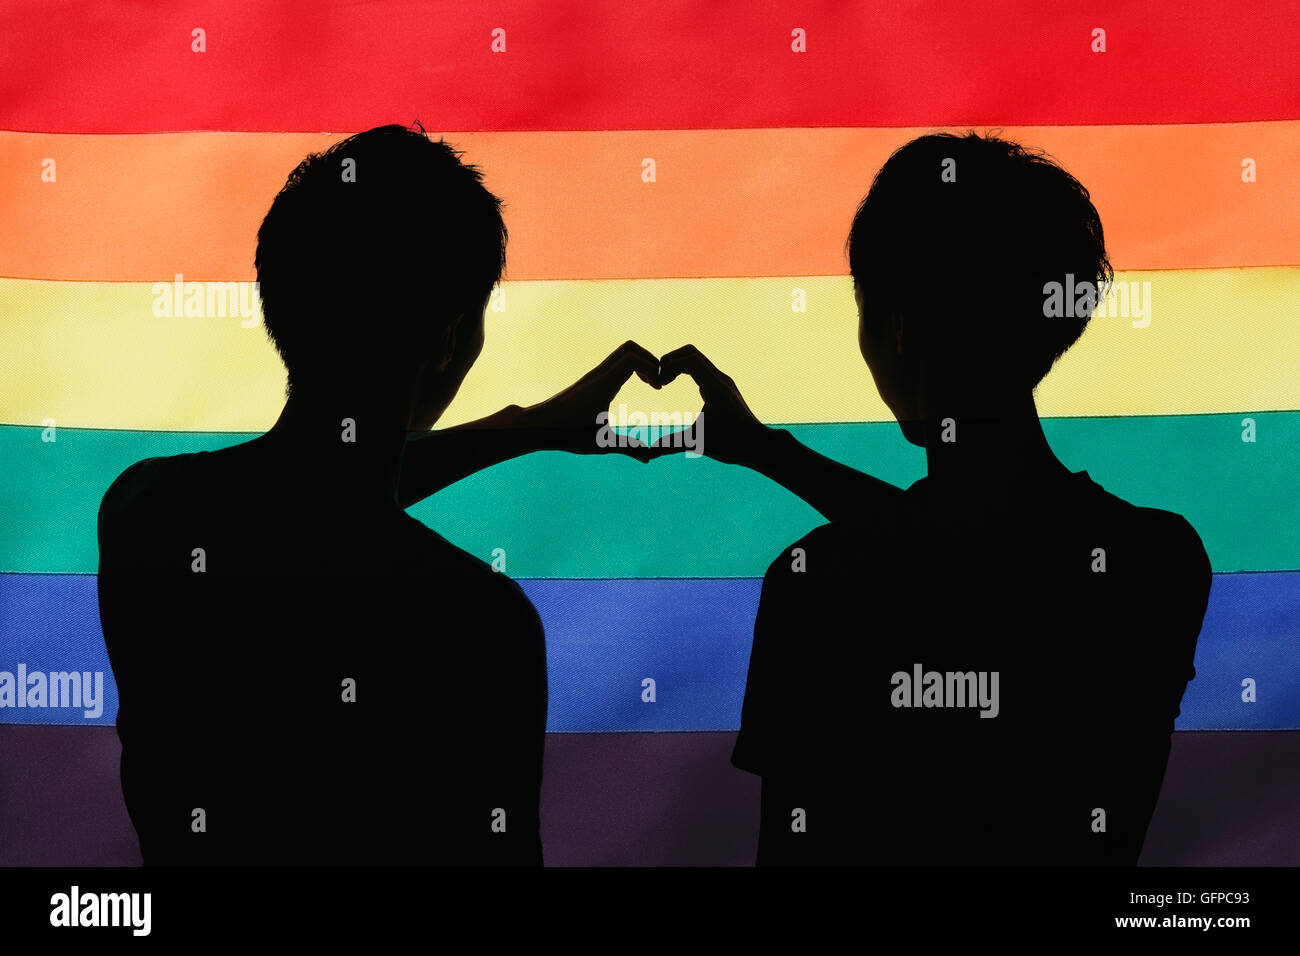 Homme couple silhouette contre le drapeau arc-en-ciel Banque D'Images